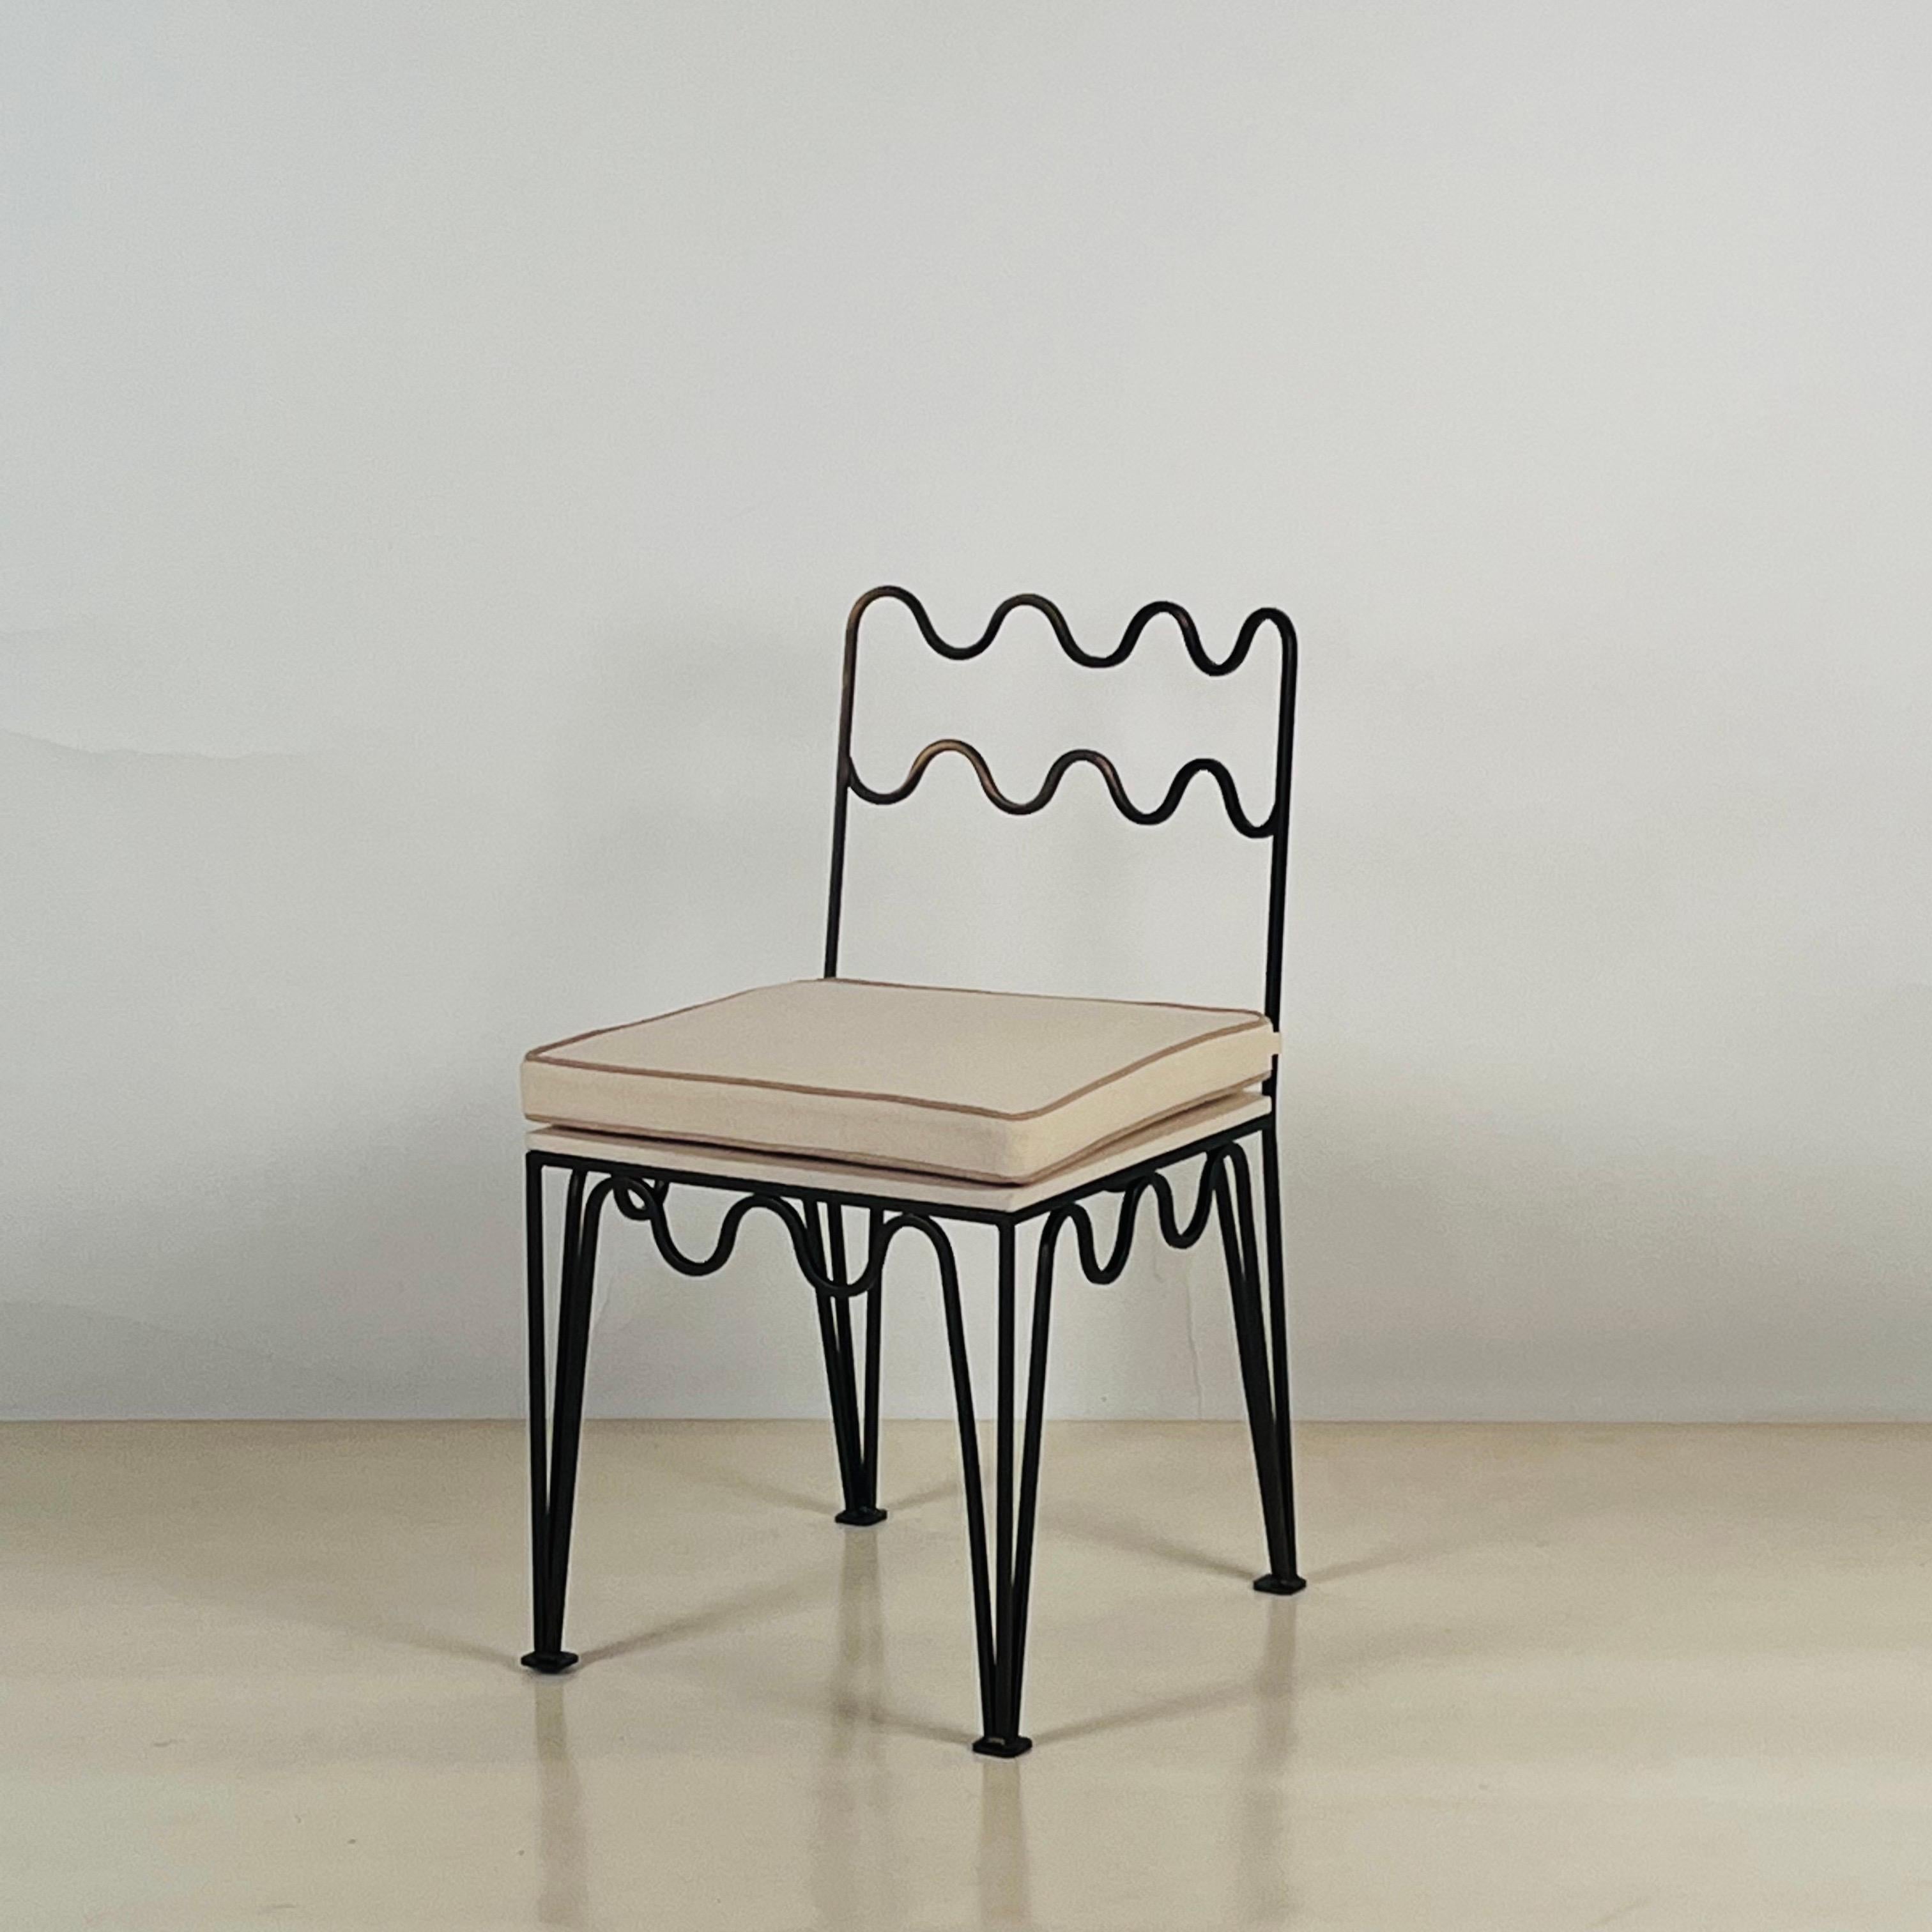 La chaise d'appoint 'Méandre'™ en bronze foncé de Design Frères®.

Chic et discret.

